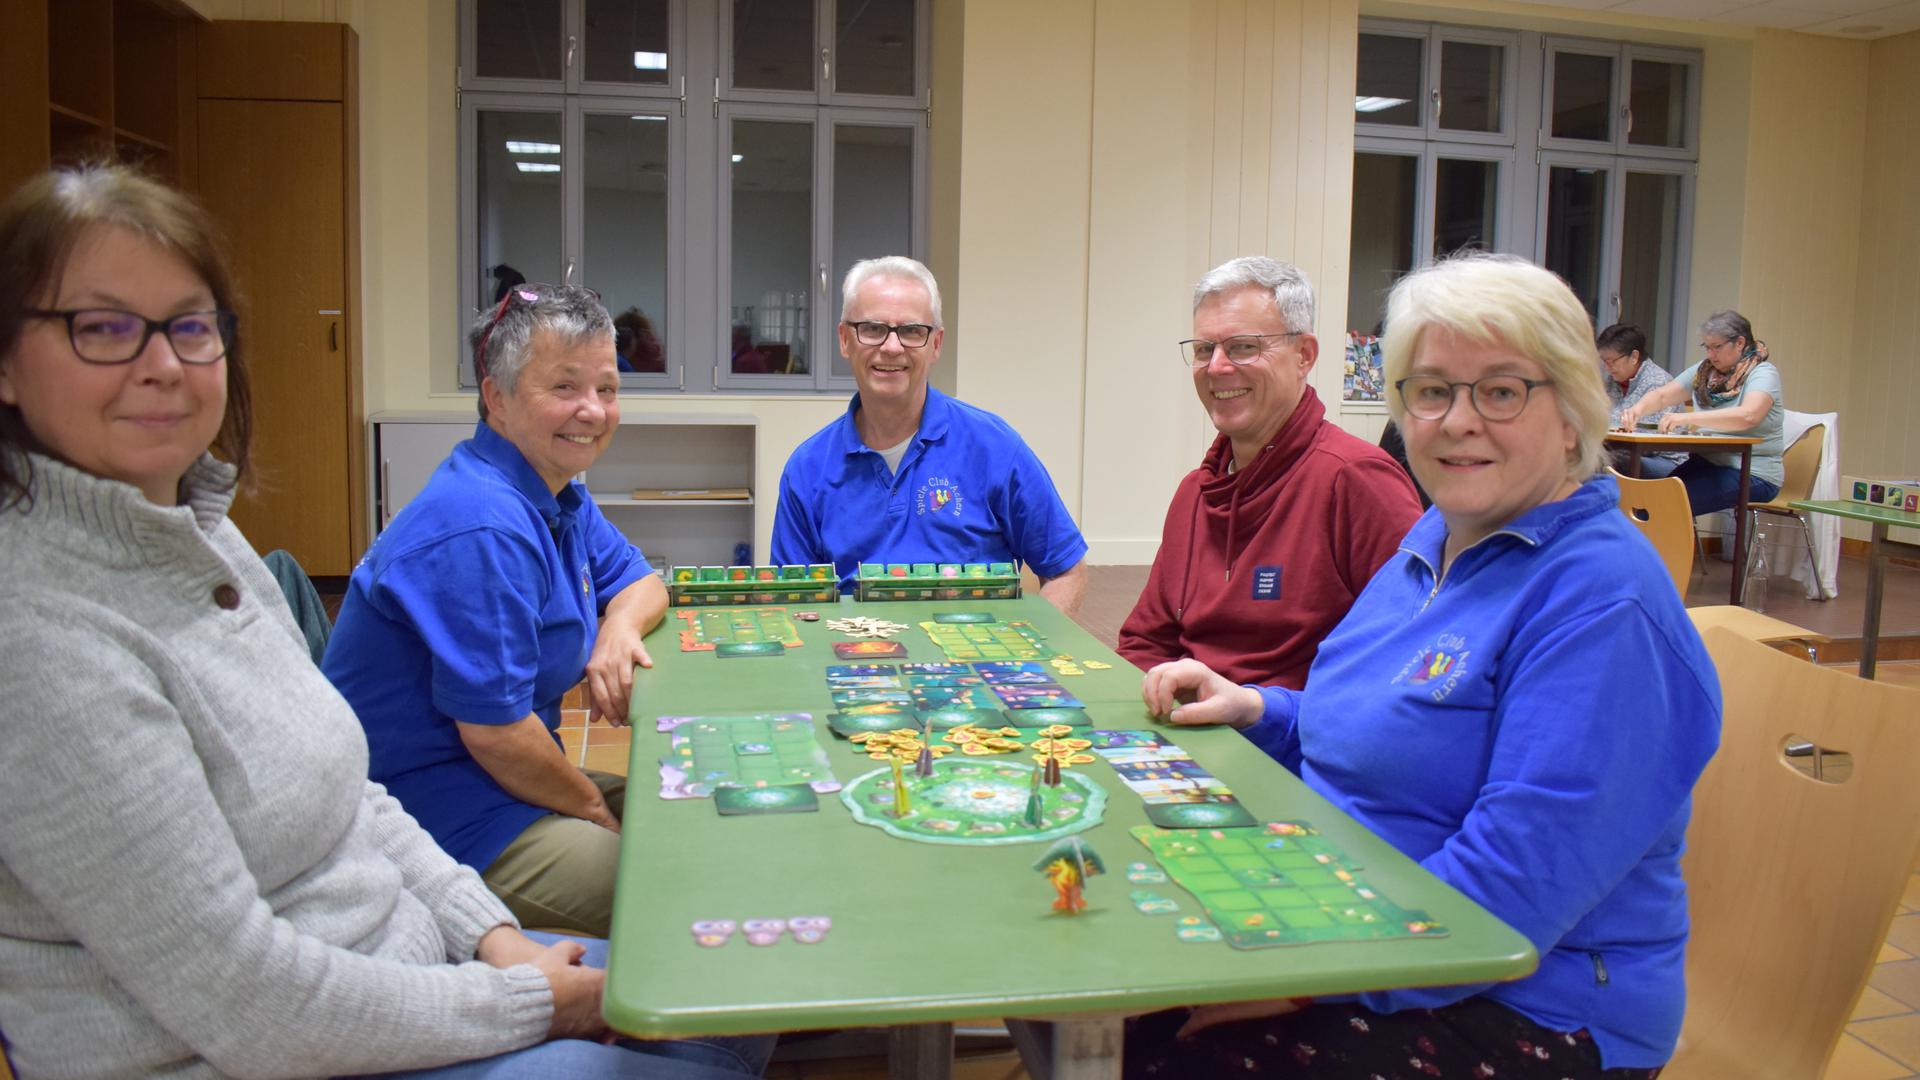 Fünf Erwachsene sitzen um einen grünen Tisch, auf dem ein Spiel aufgebaut ist, und lachen in die Kamera.